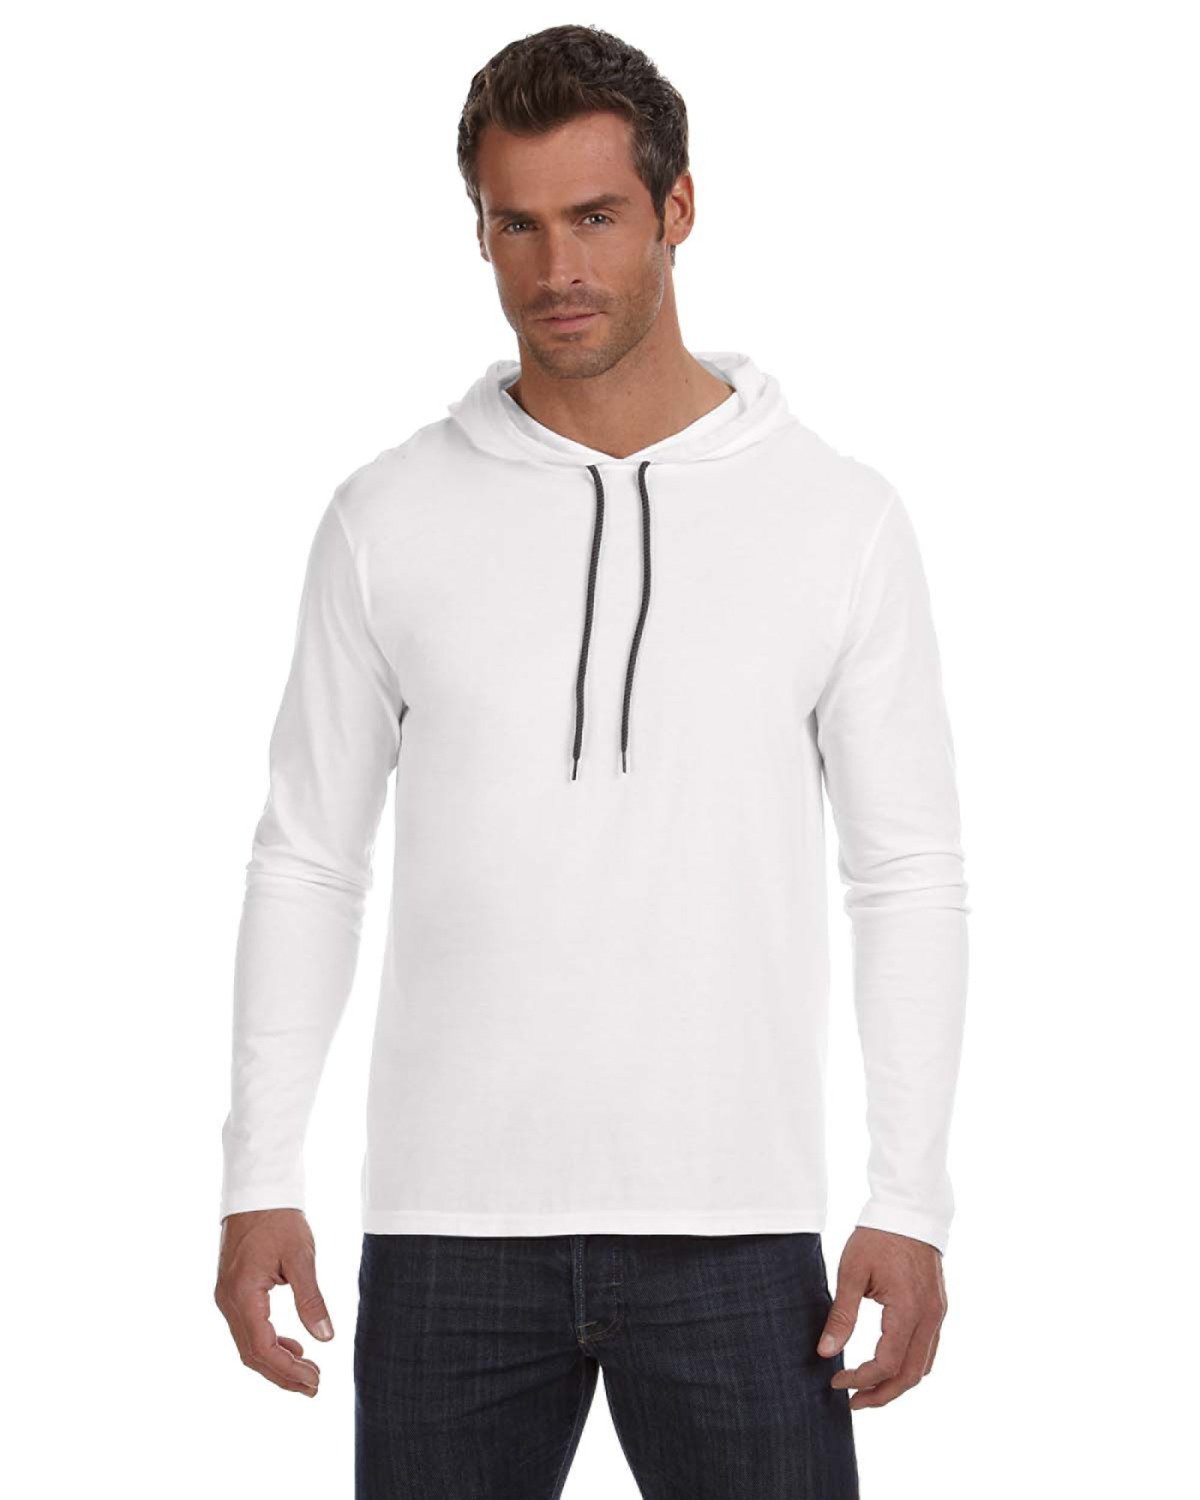 Adult Lightweight Long-Sleeve Hooded T-Shirt-Gildan